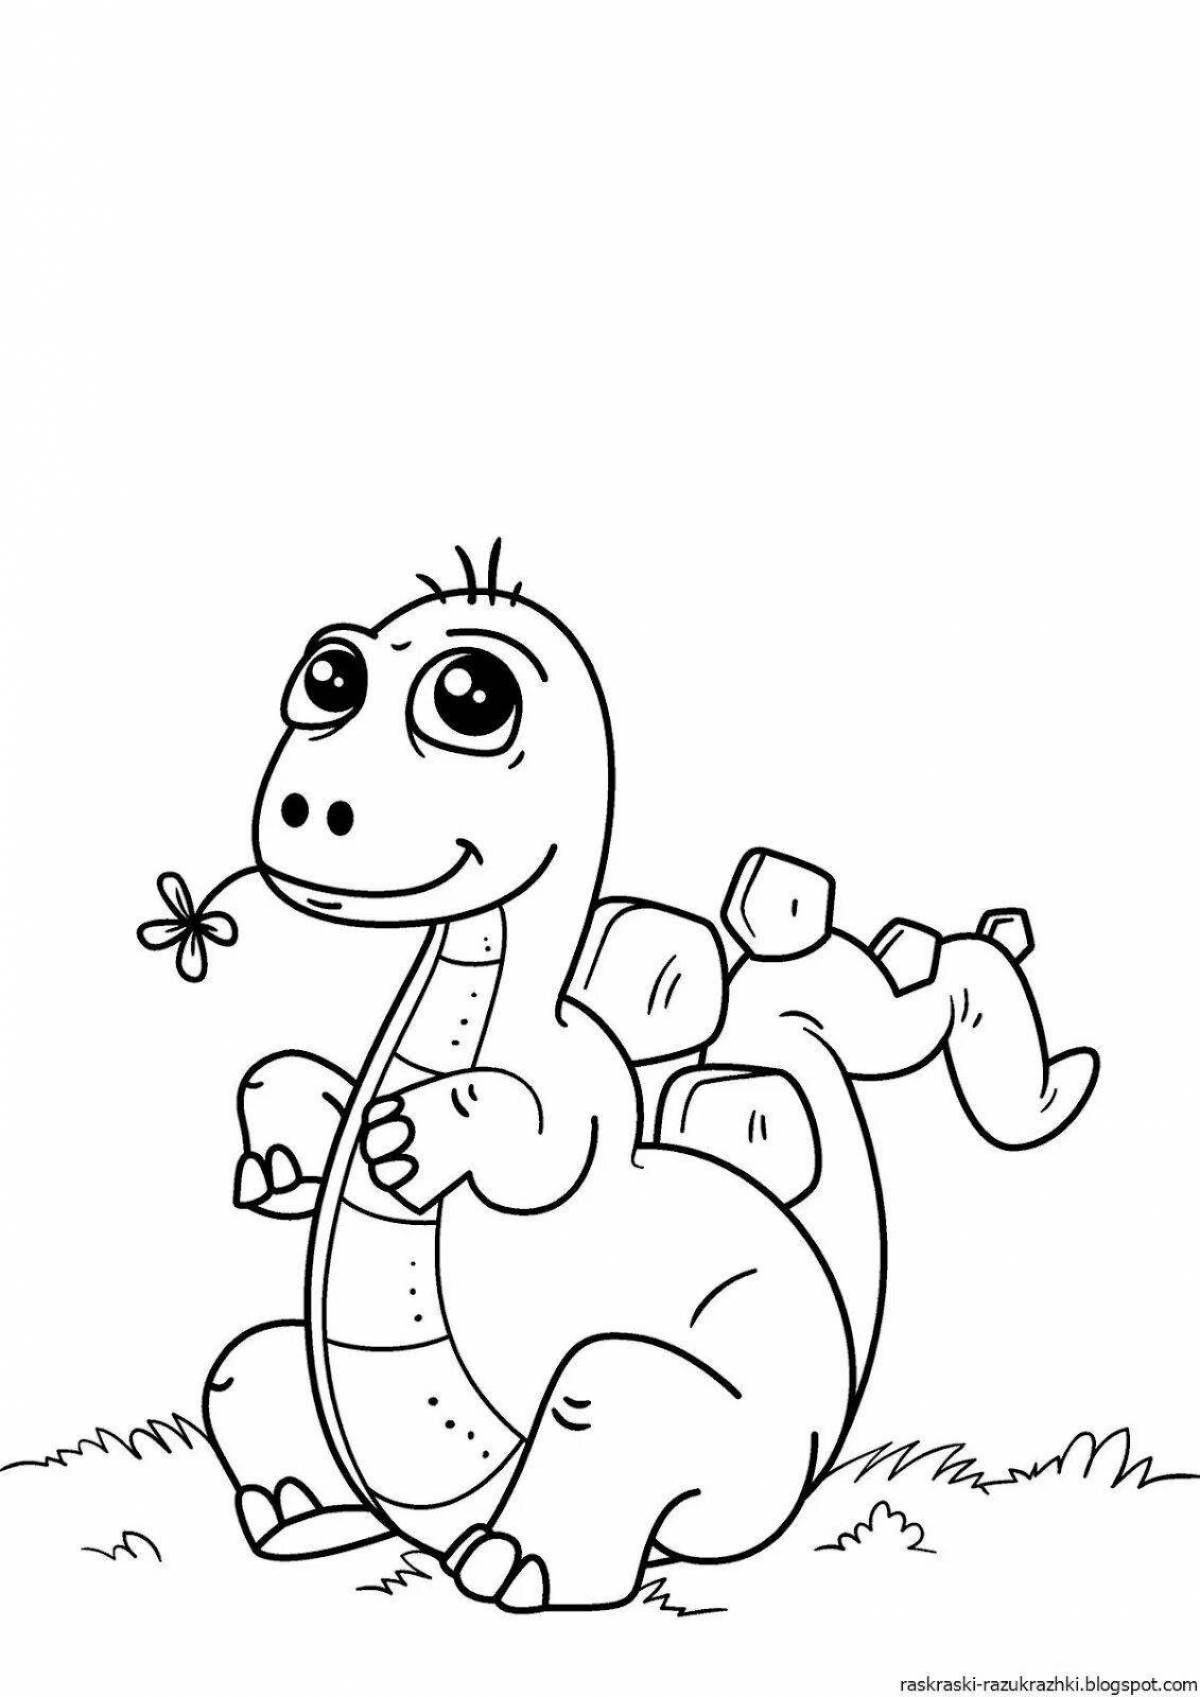 Fun dinosaur coloring book for kids